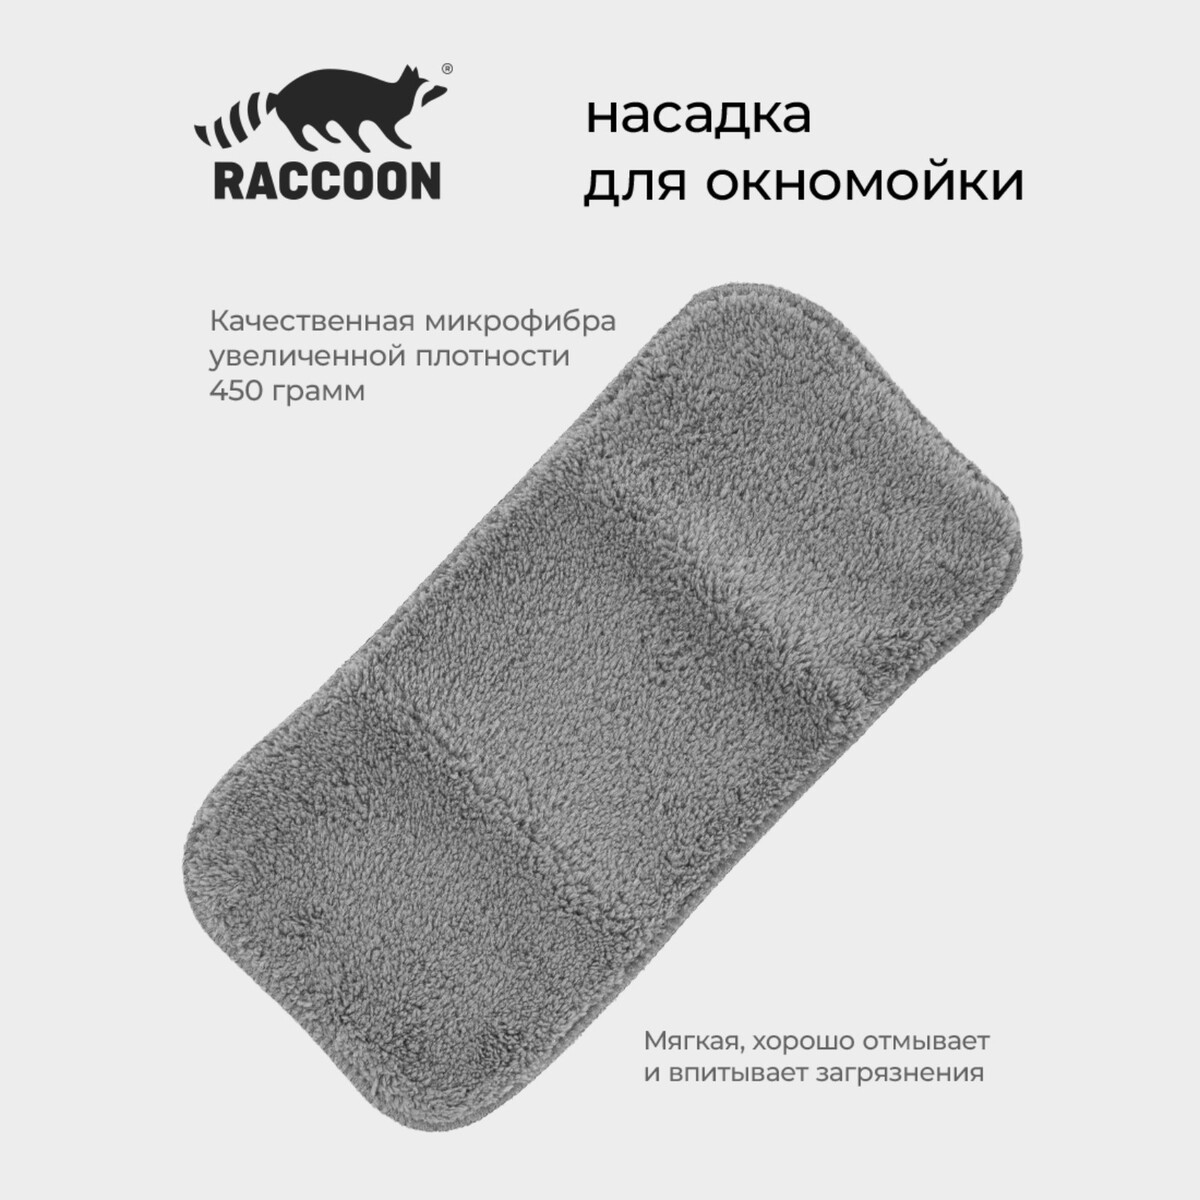 Насадка для окномойки с гибким механизмом, 32х15 см Raccoon, цвет серый